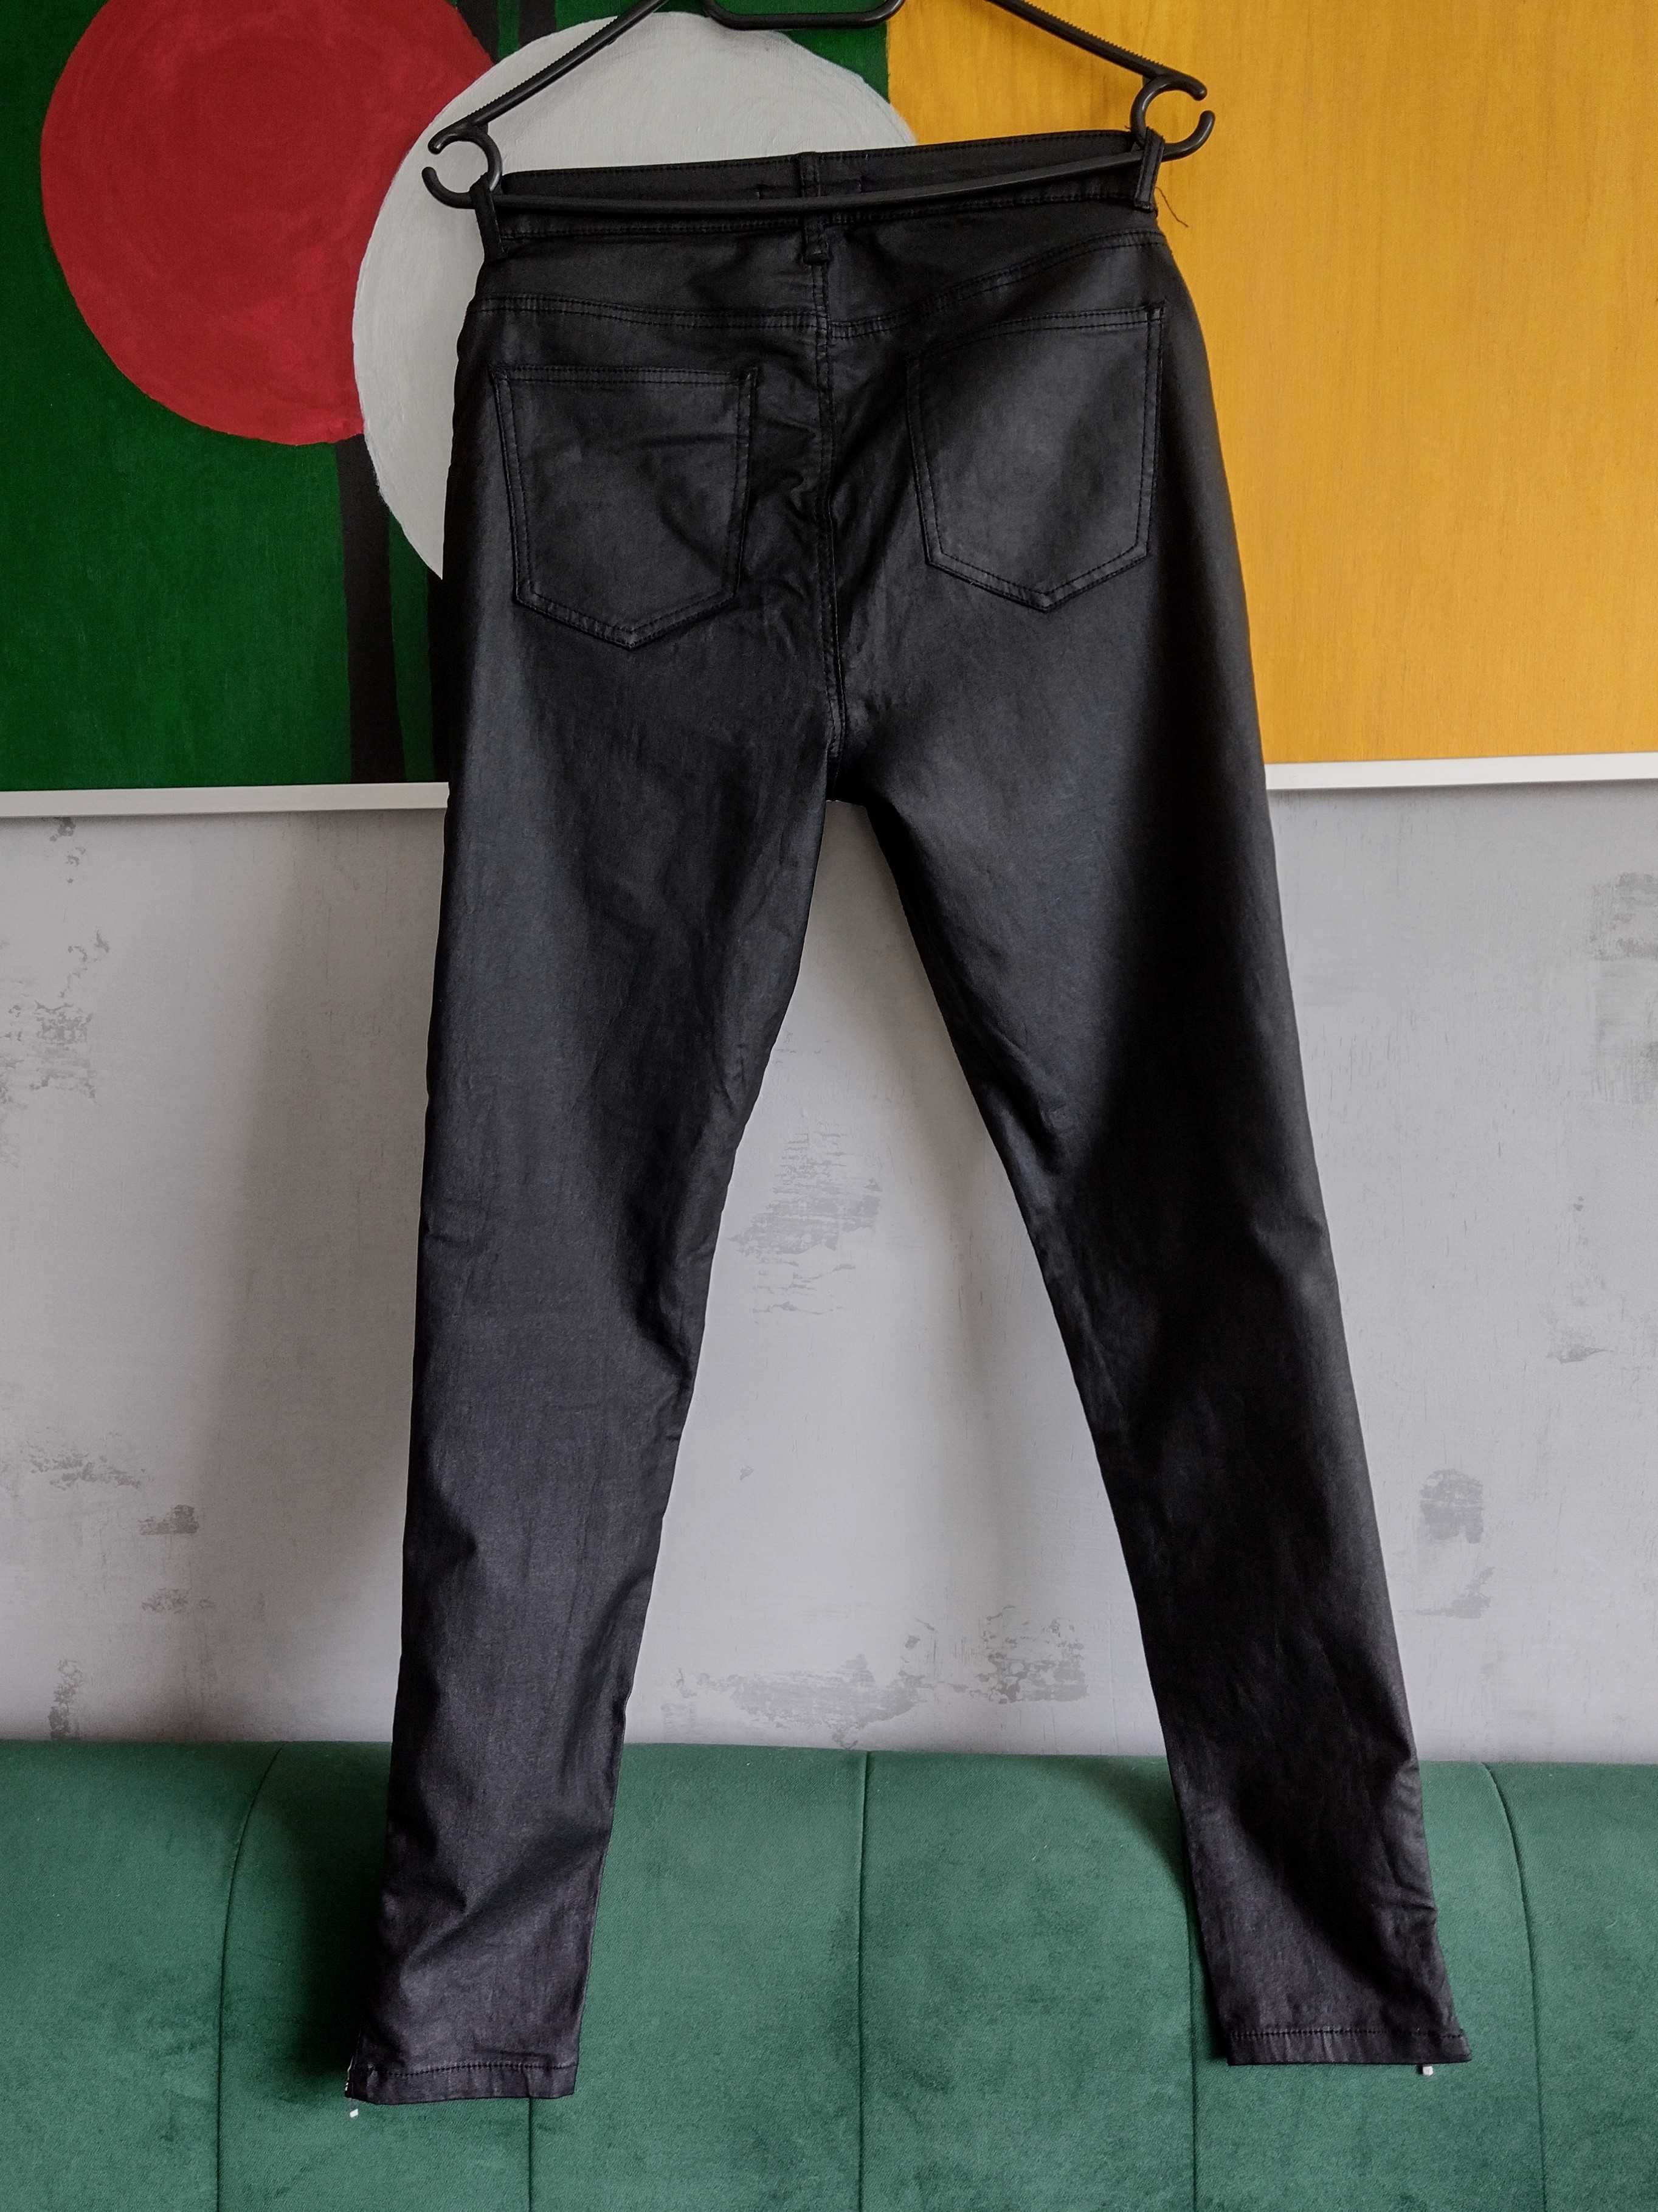 Medicine spodnie M 38 jak skórzane rock punk gotyckie industrial